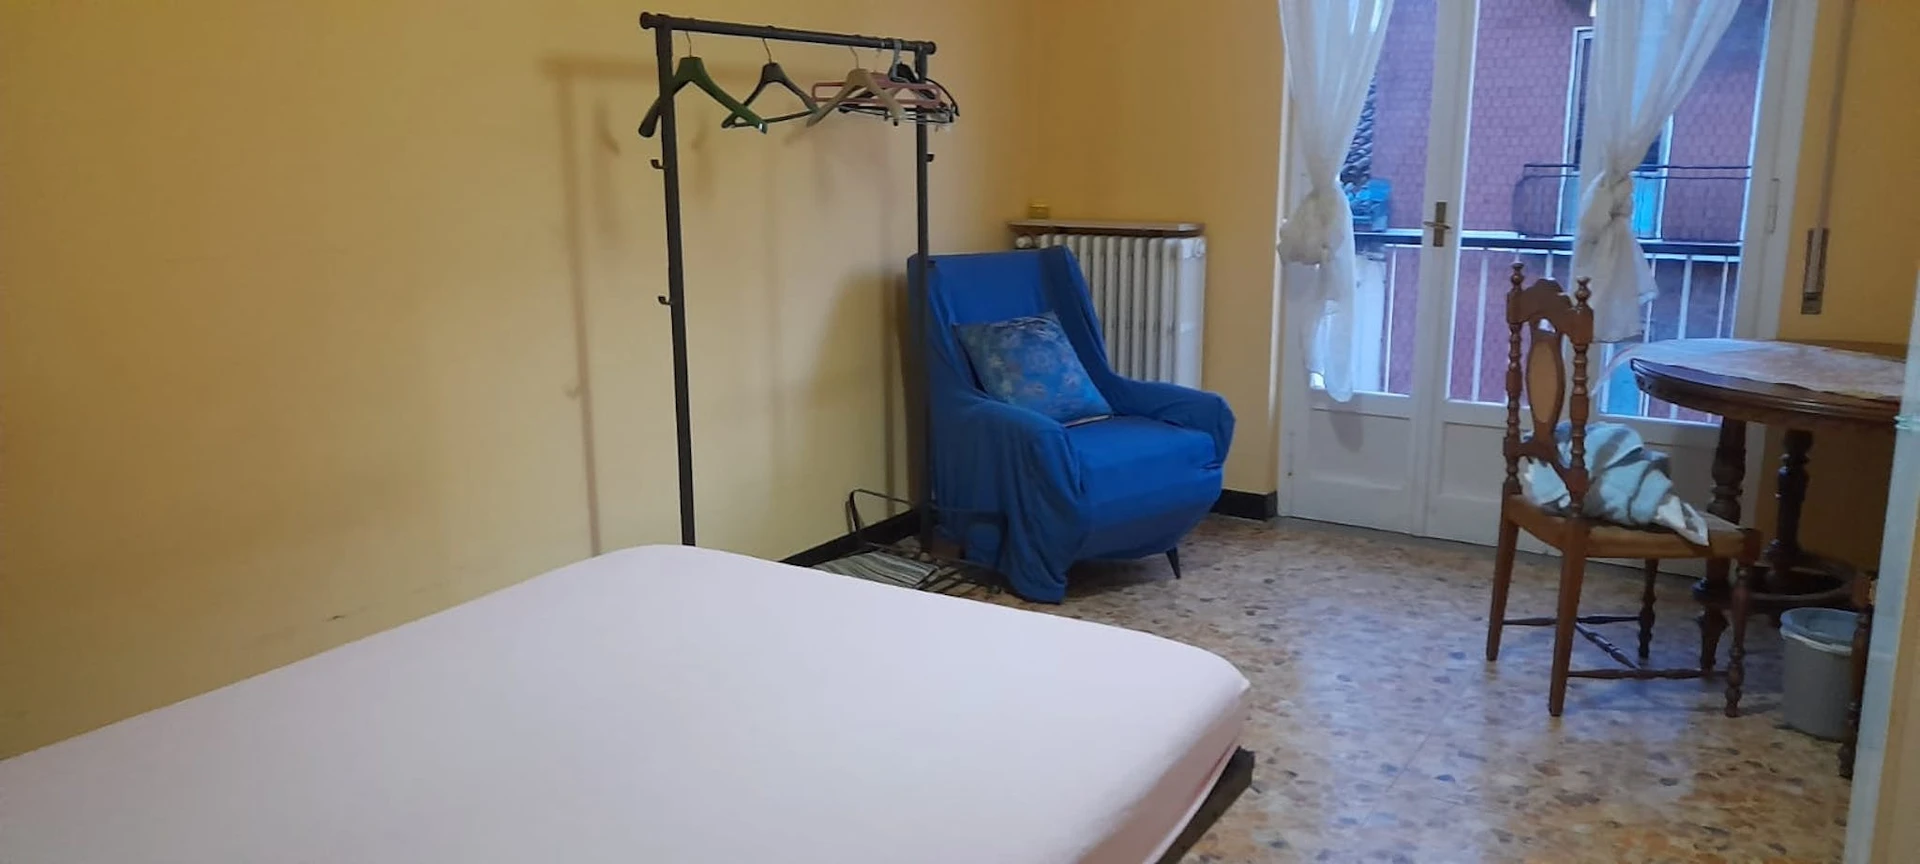 Piacenza de çift kişilik yataklı kiralık oda